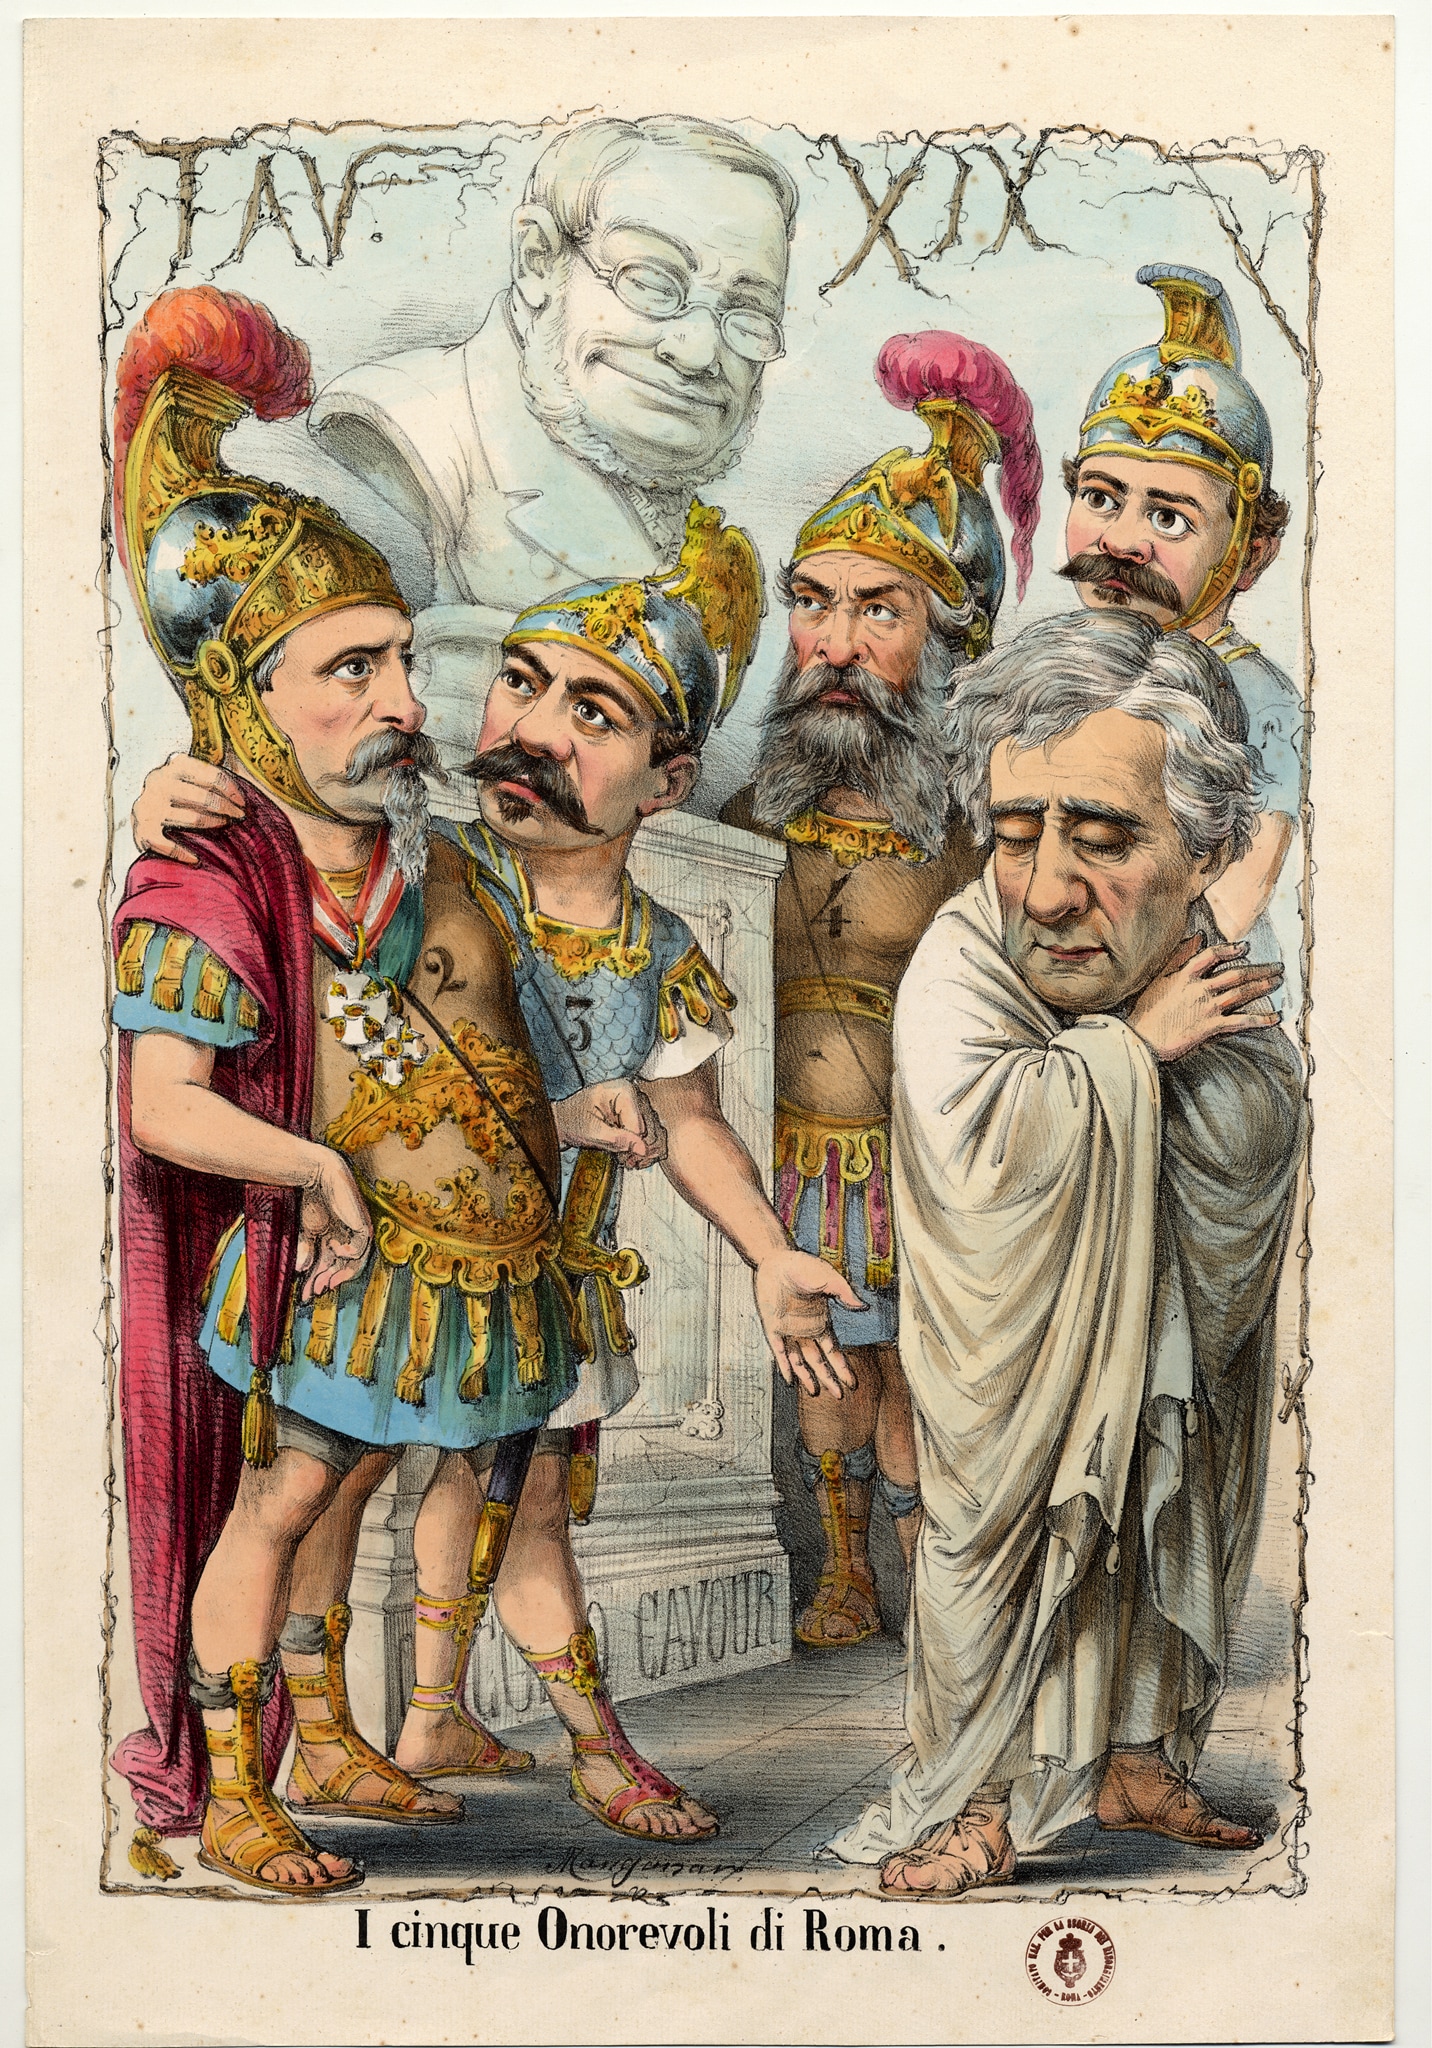 Disegno allegorico sui deputati eletti nel Collegio elettorale di Roma nel 1873